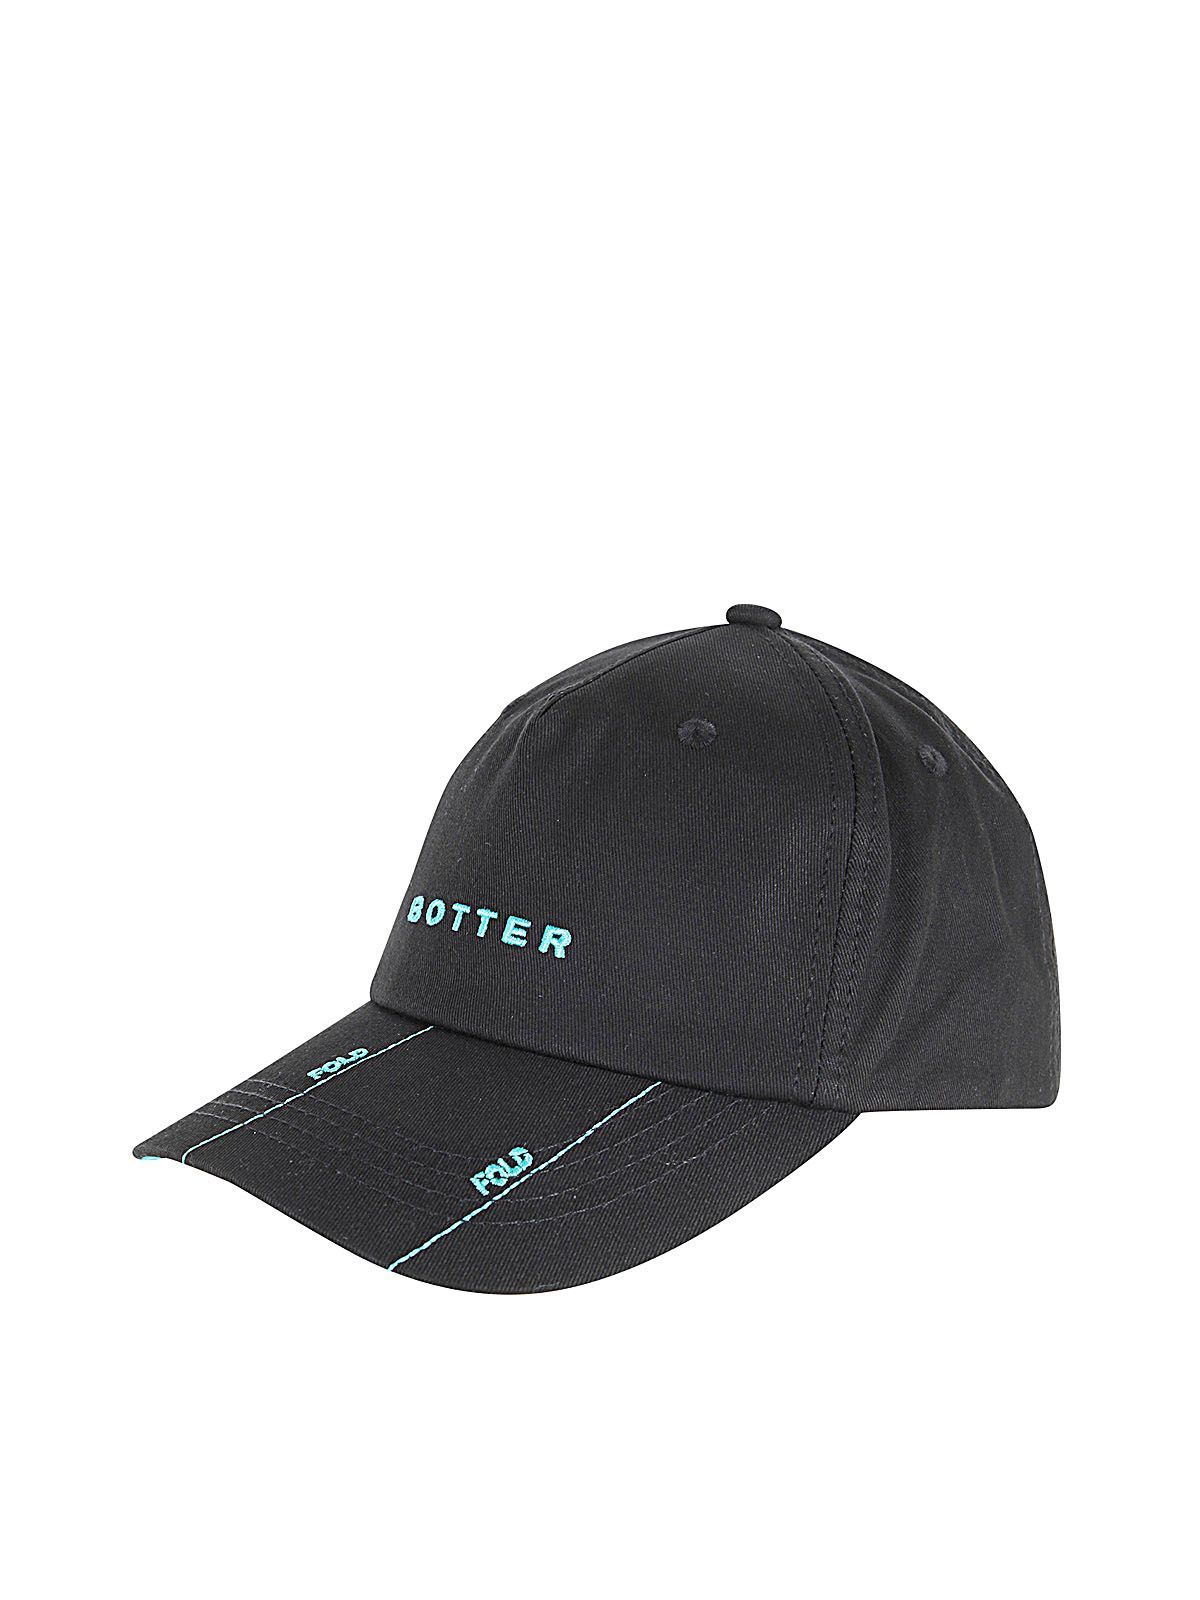 BOTTER BOTTER FOLD  CAP,9029.A001